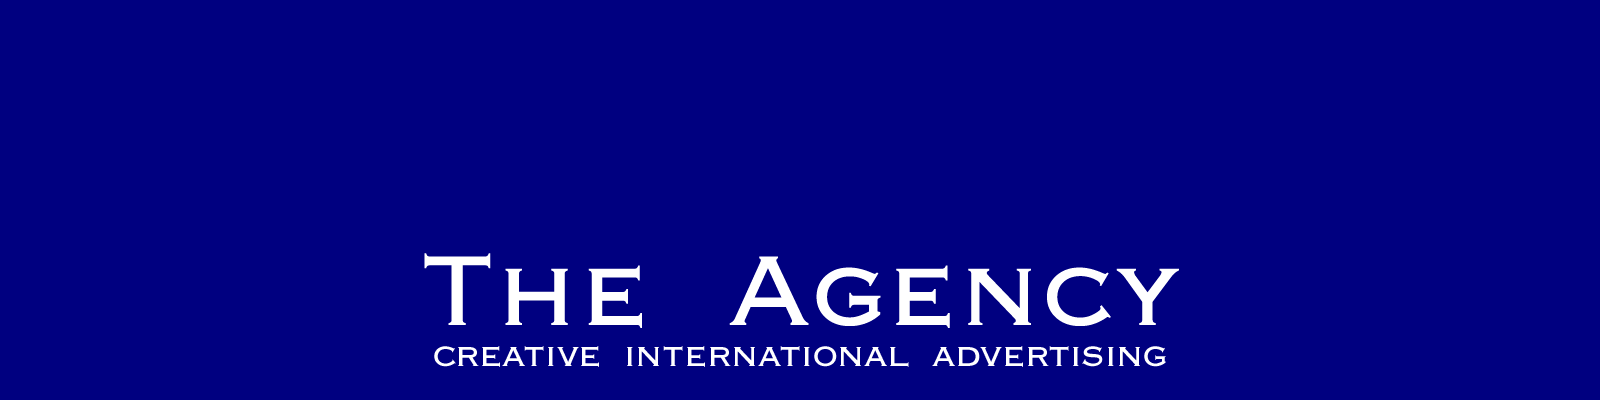 THE AGENCY logo